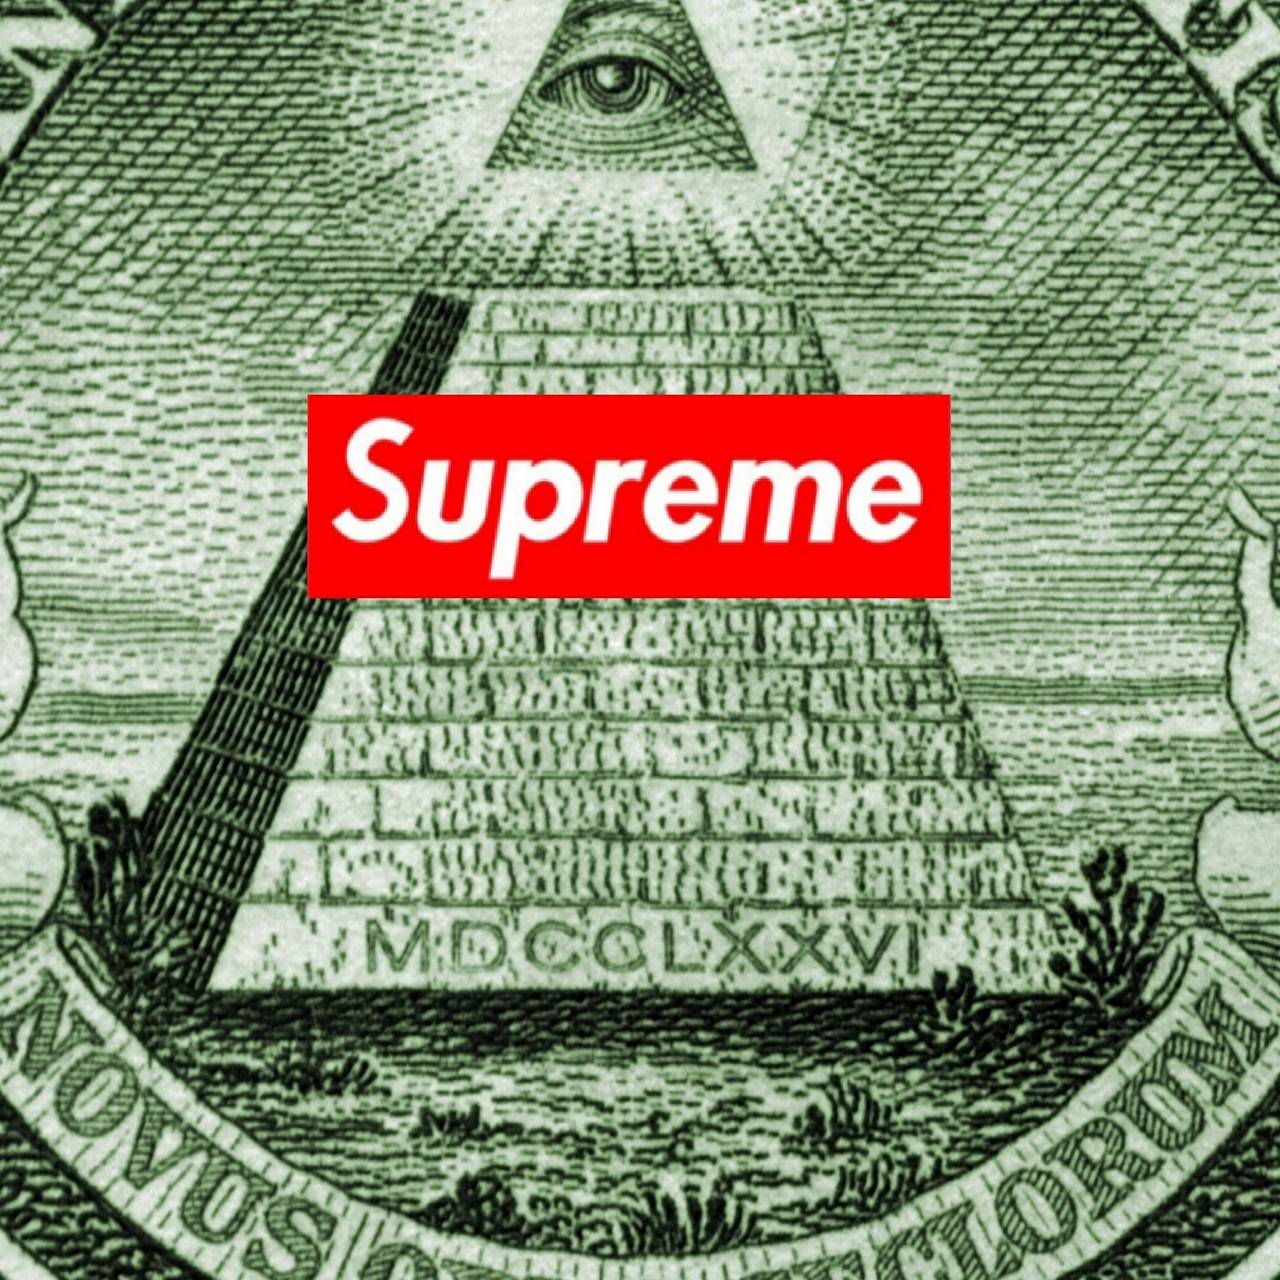 Supreme Illuminati Wallpaper Free Supreme Illuminati Background